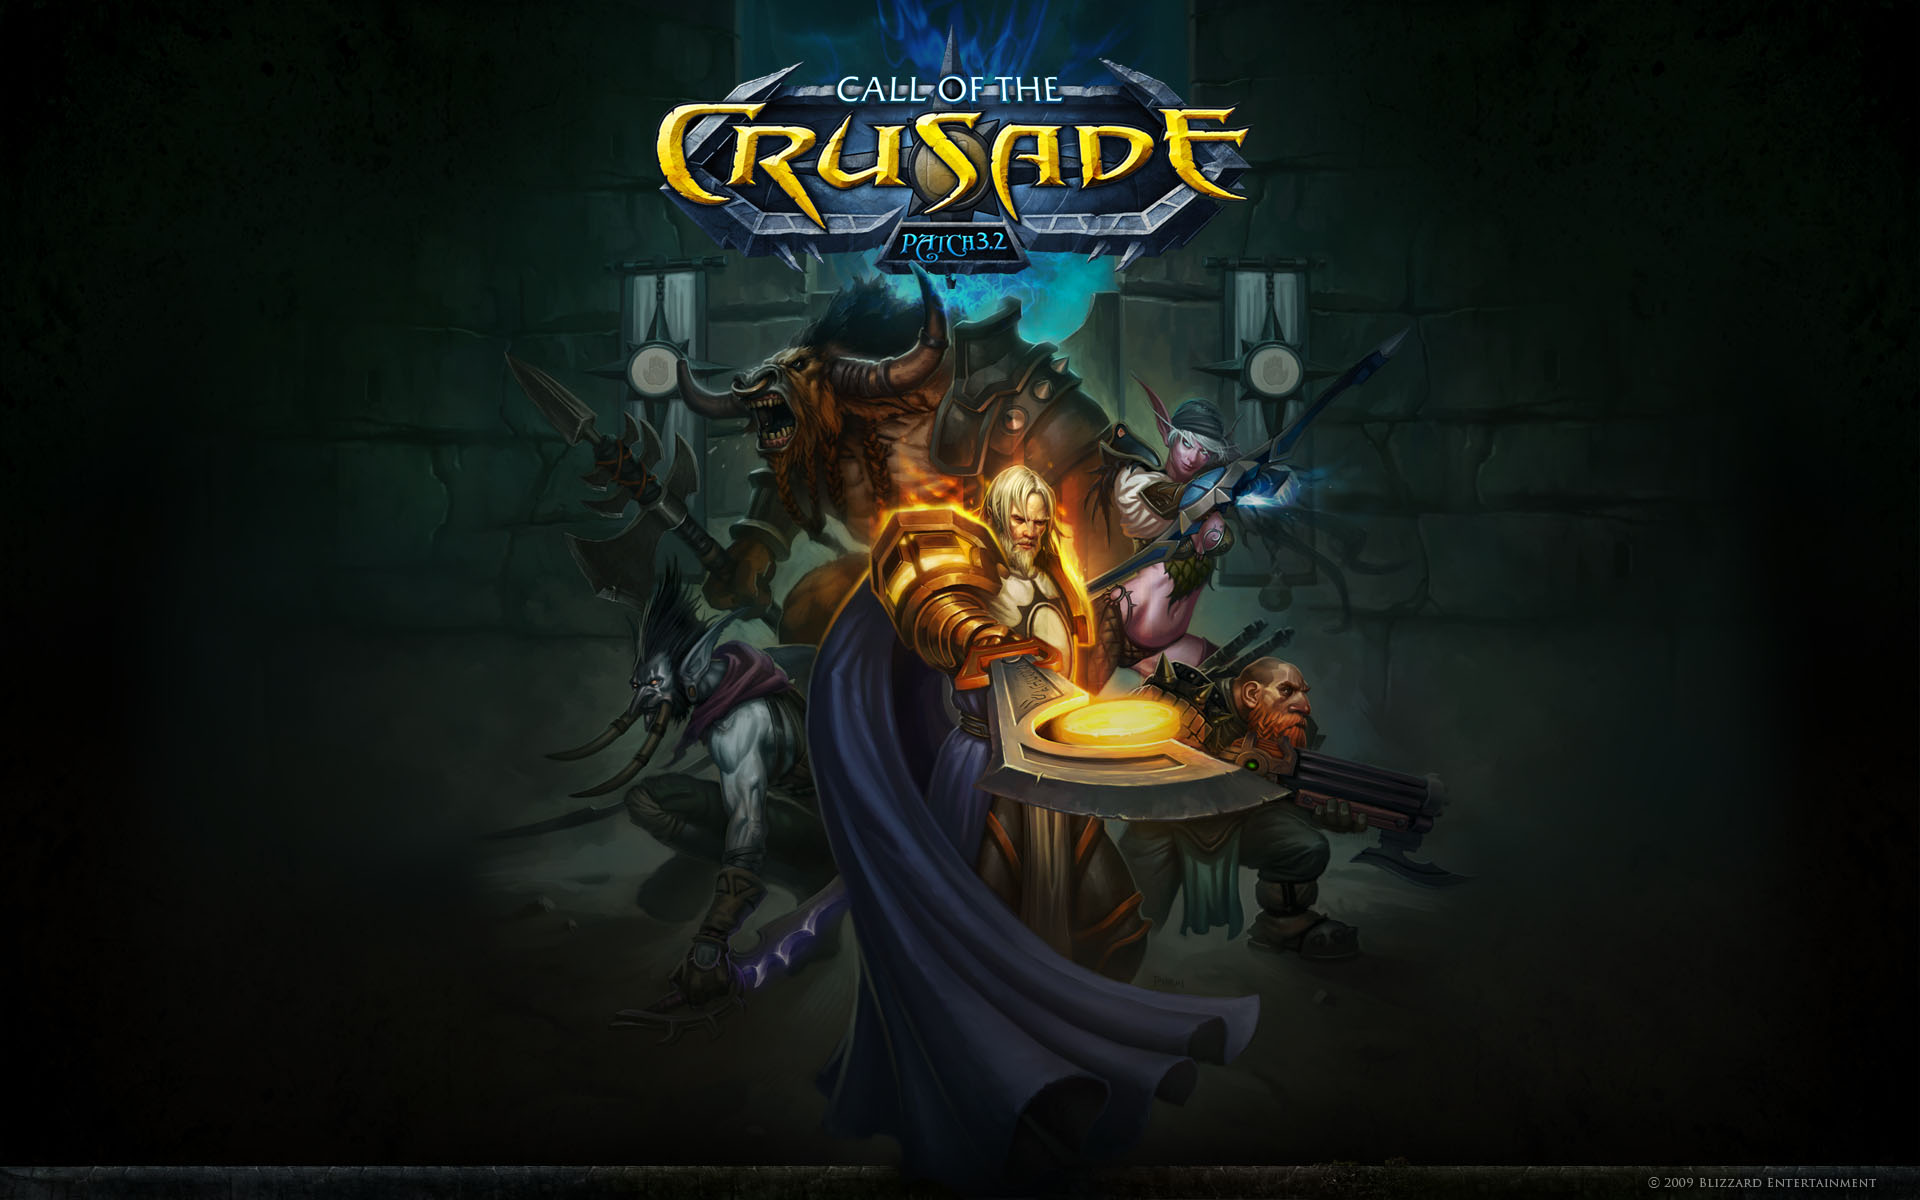 Descarga gratuita de fondo de pantalla para móvil de World Of Warcraft: La Llamada De La Cruzada, World Of Warcraft, Warcraft, Videojuego.